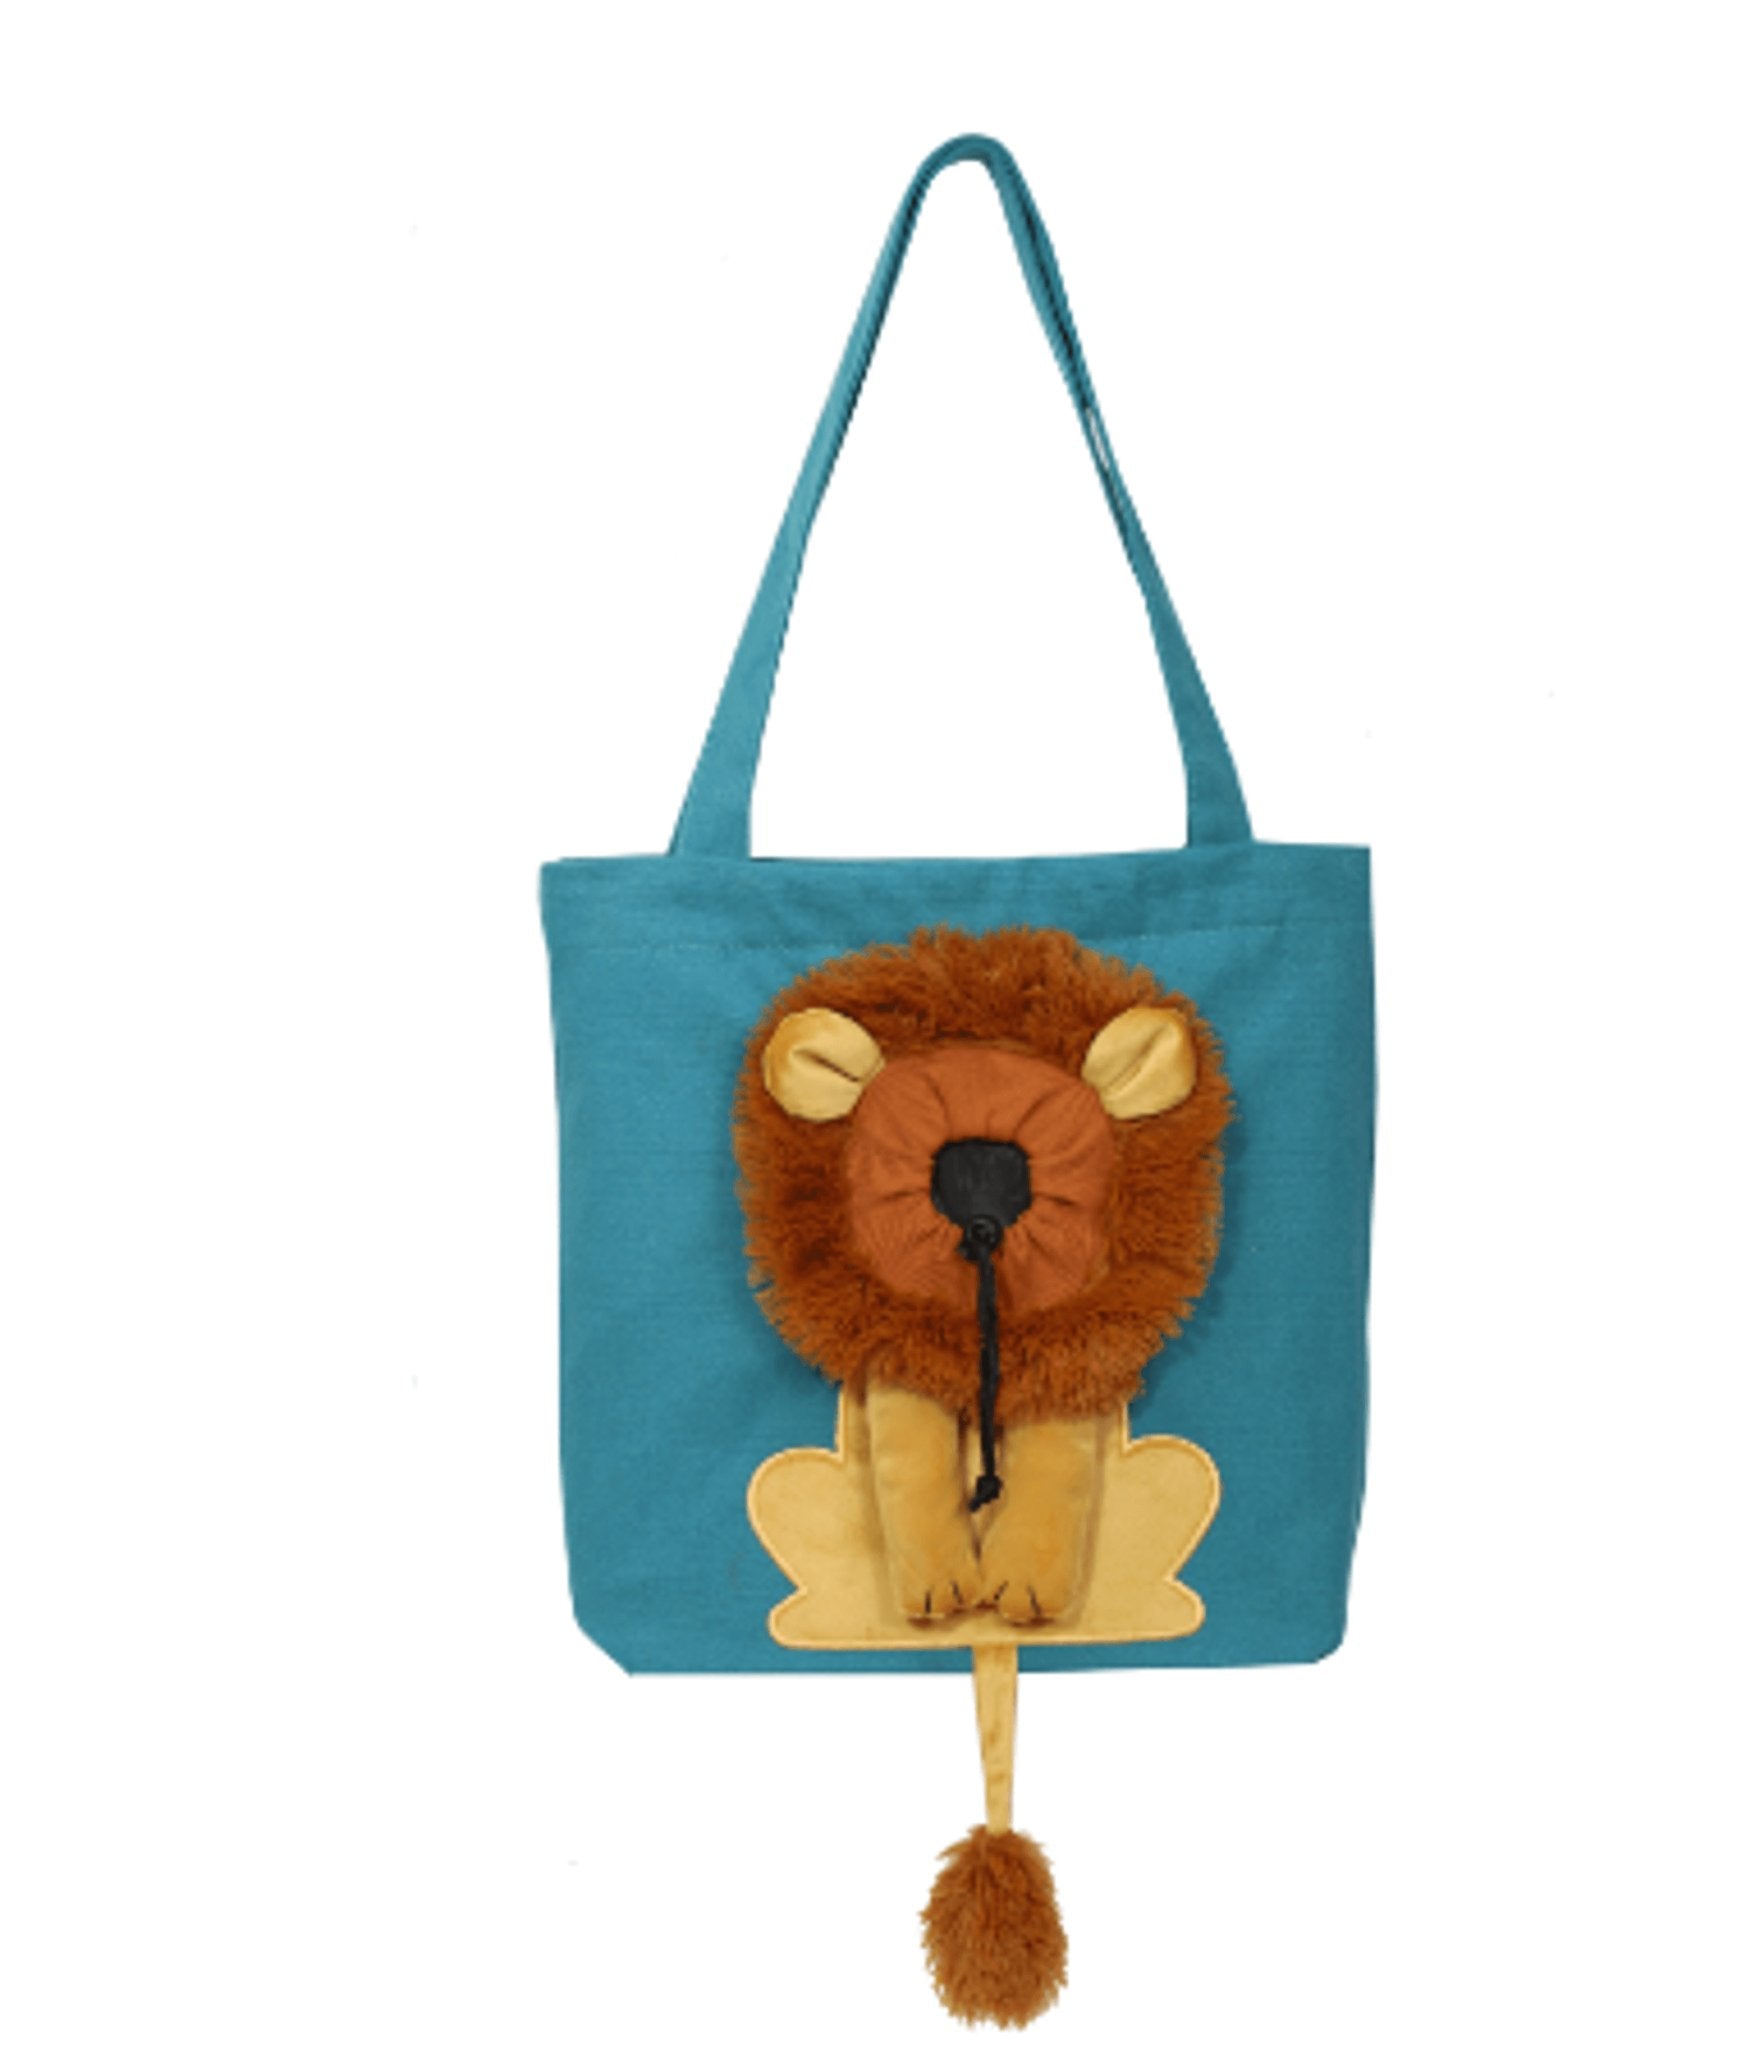 Soft Pet Carriers Lion Design Portable Breathable Bag - ItemBear.com